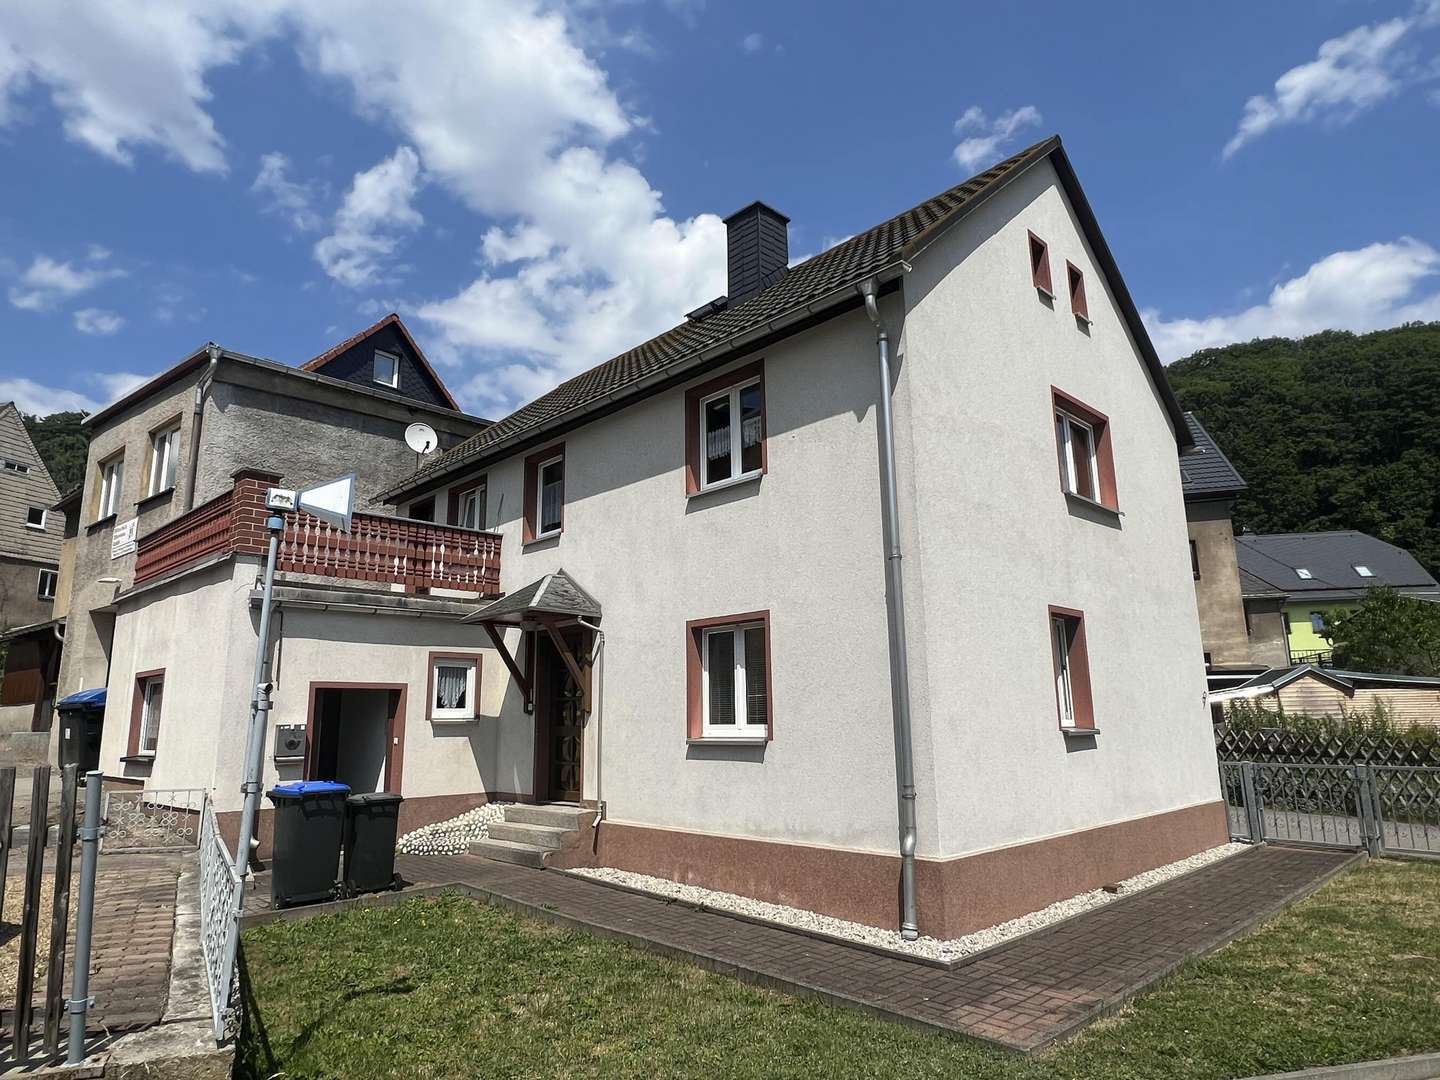 null - Einfamilienhaus in 09526 Olbernhau mit 100m² kaufen